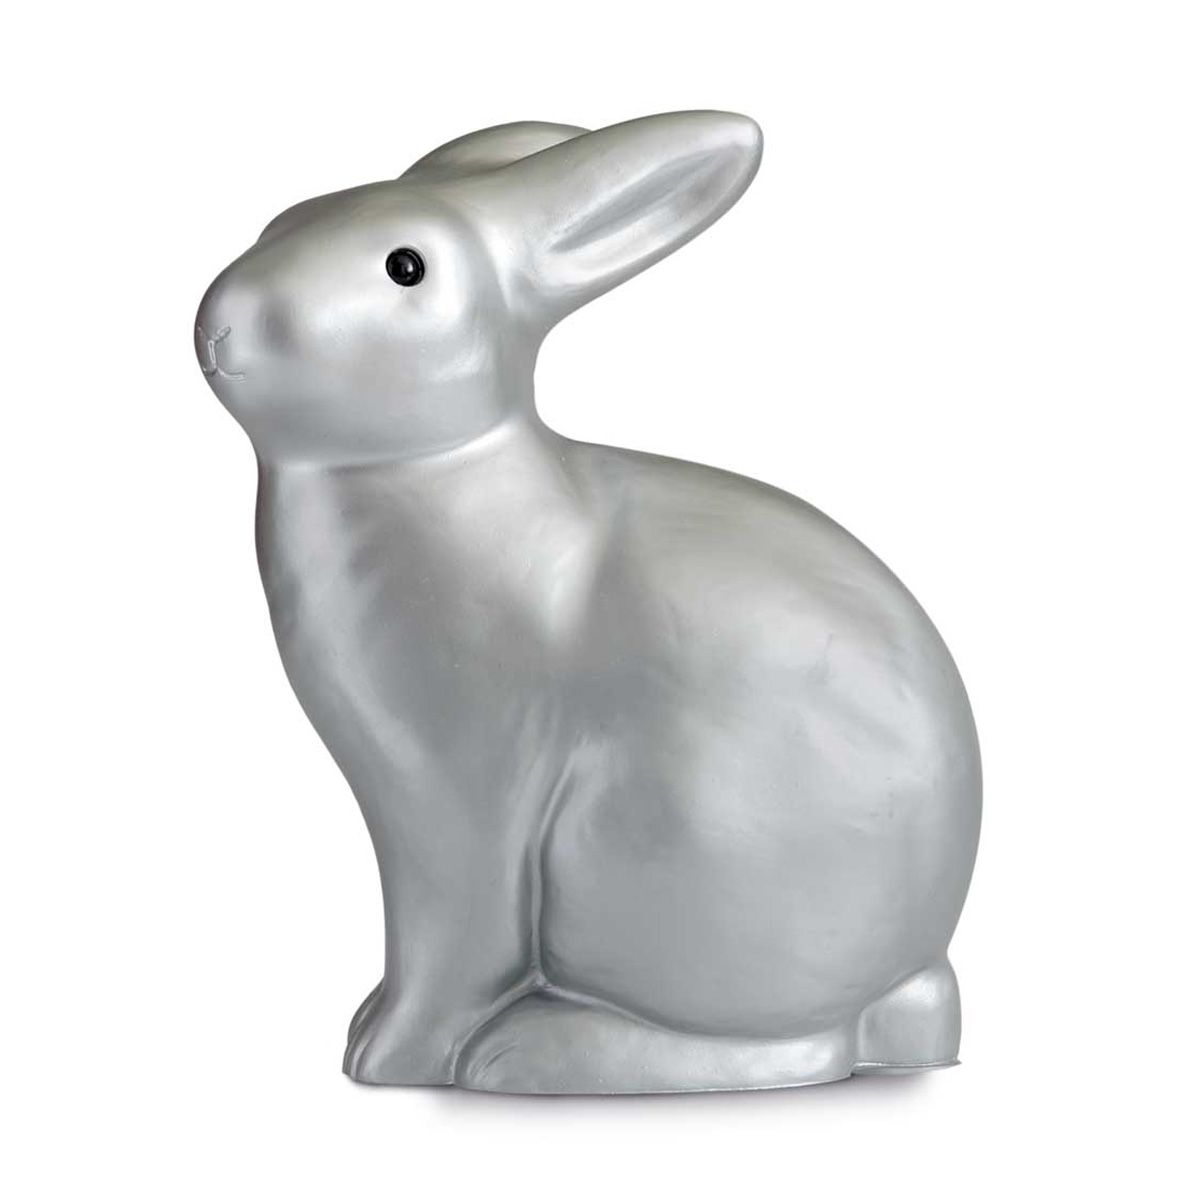 Кролики серебро купить. Ночник Egmont крокодил (24 см). Копилка кролик серебряный. Ночник кролик. Статуэтки серебристые кролики.